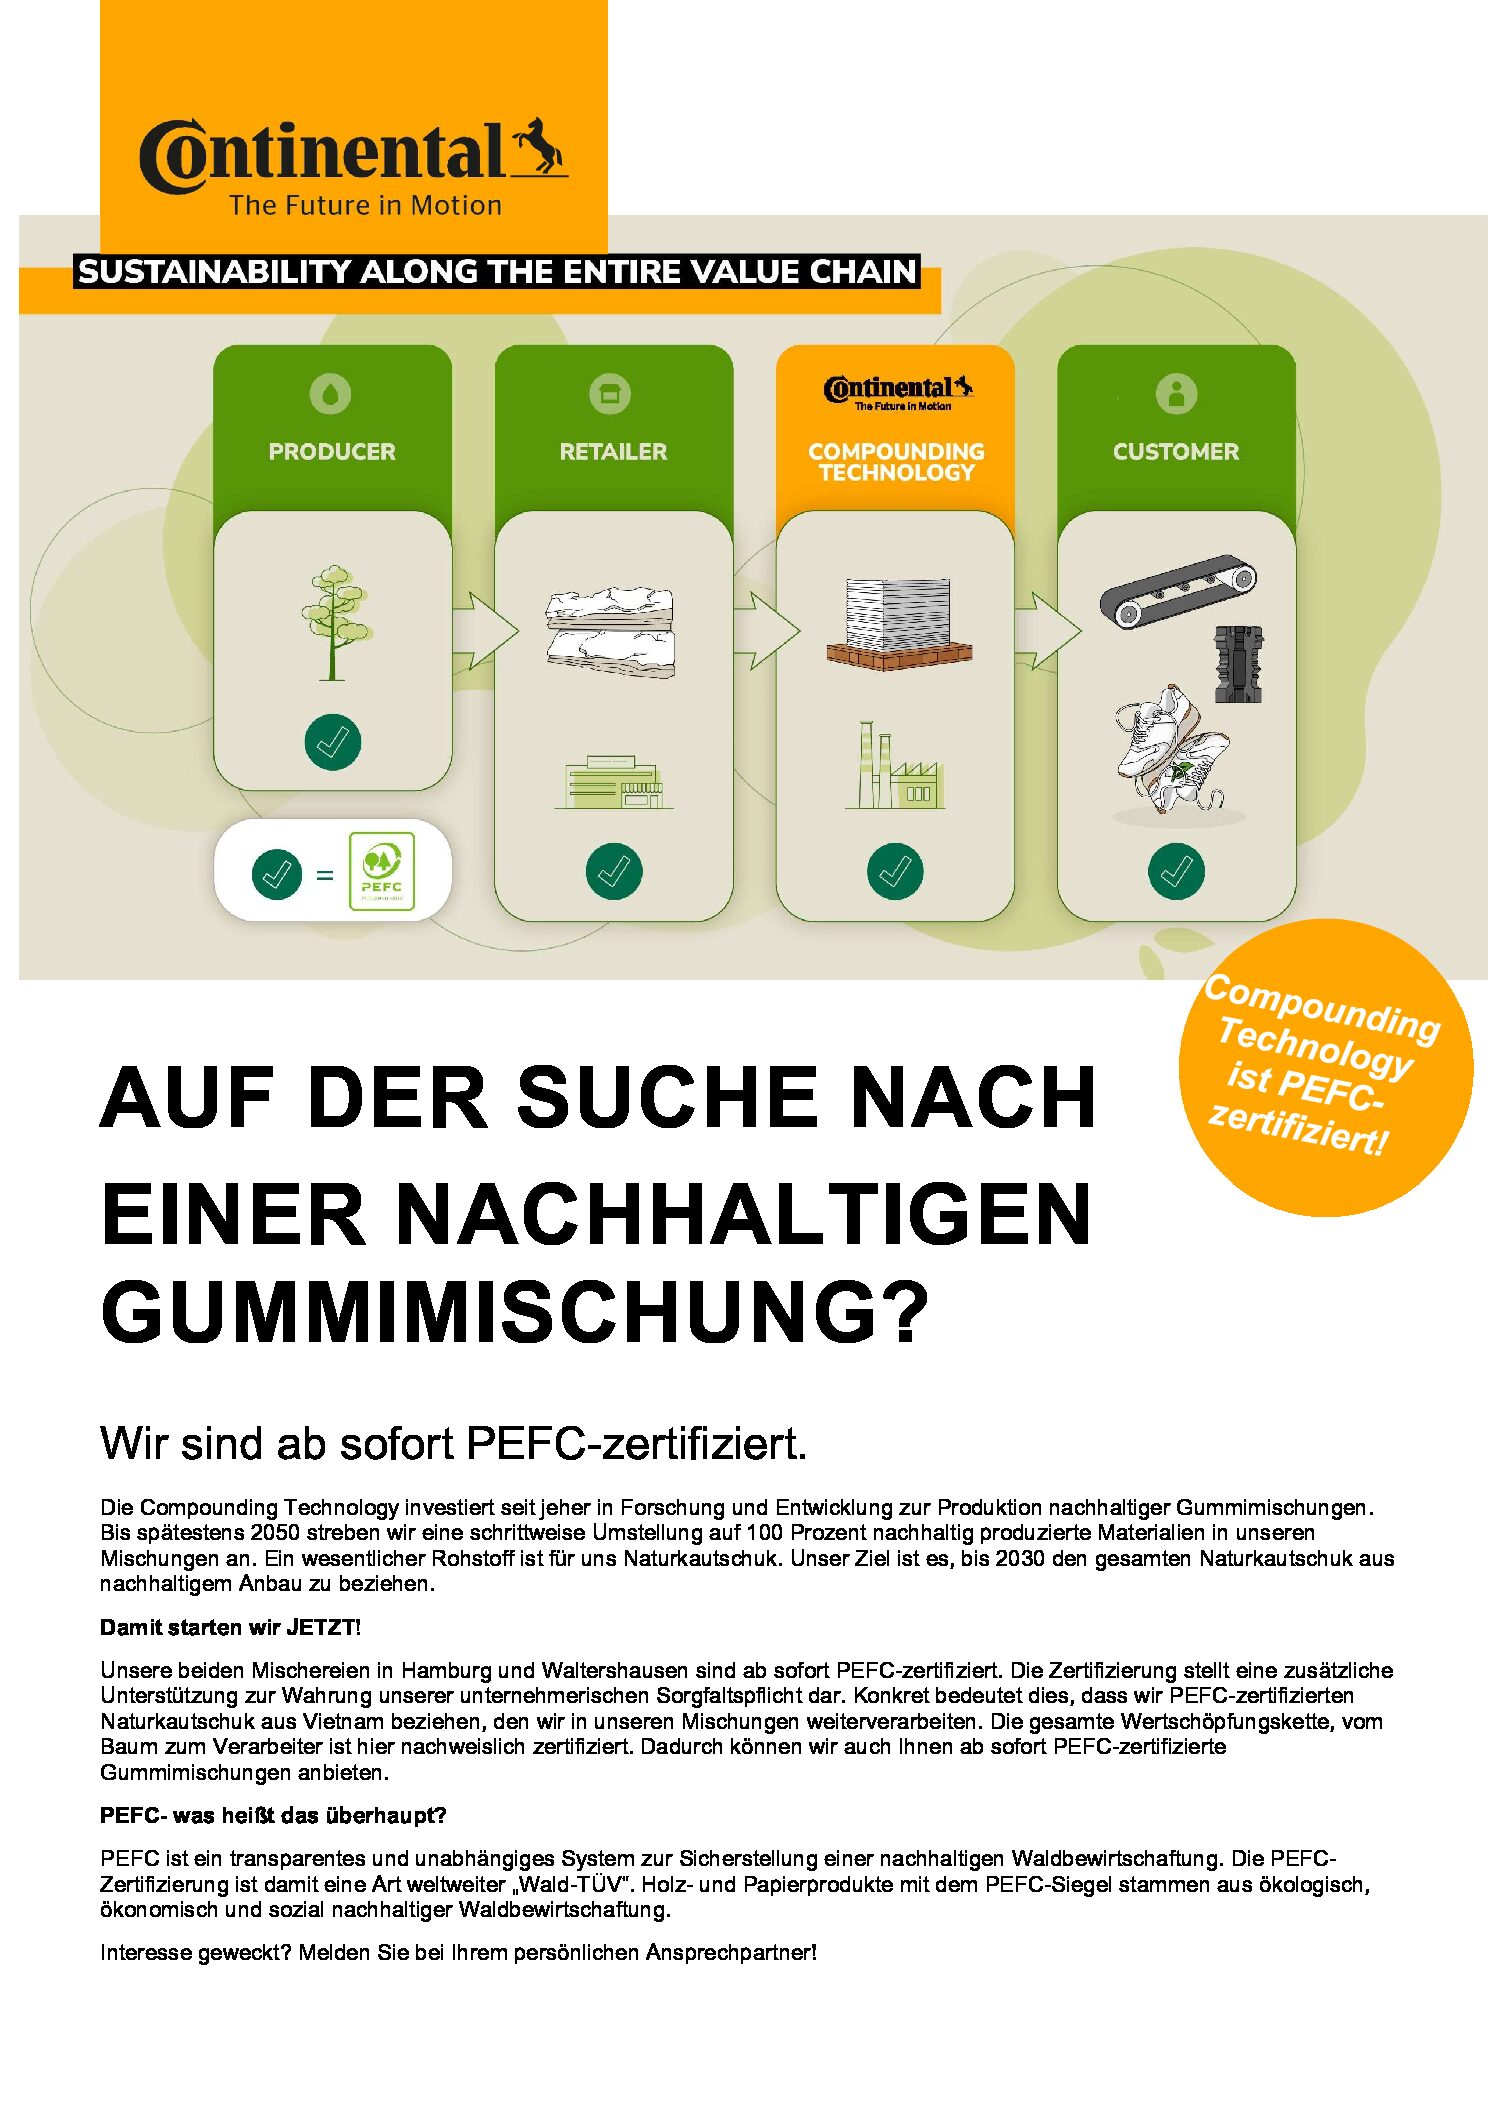 PEFC-Zertifizierung einiger Rohmaterial-Lieferanten